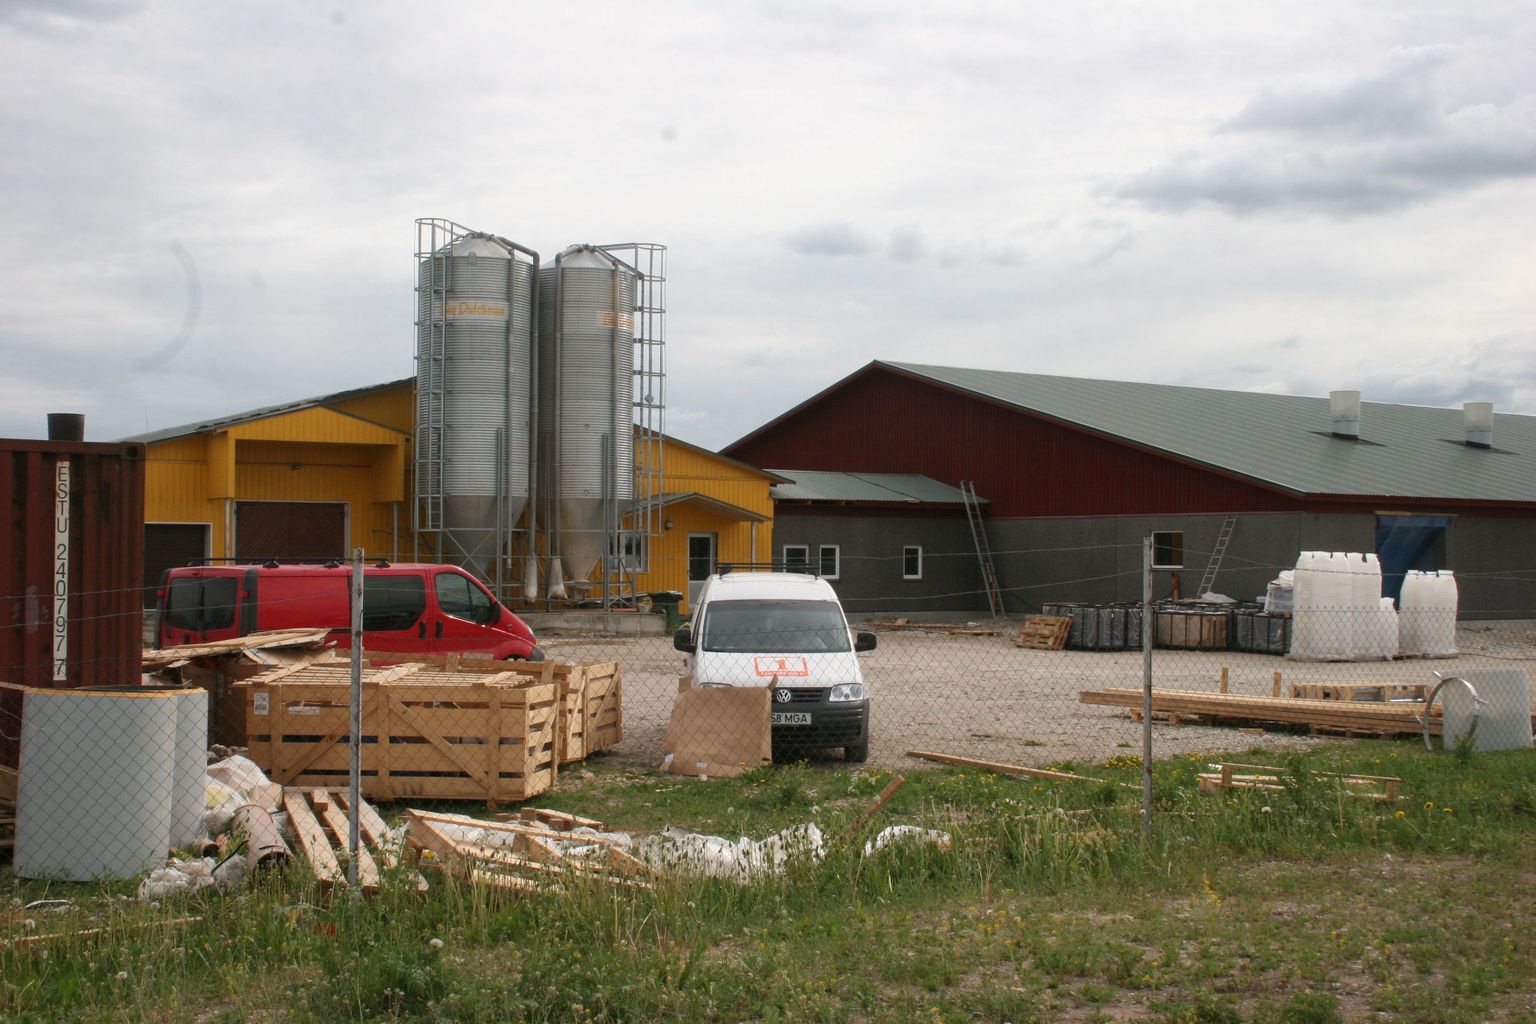 Farmi hoone on katuse all ja tehakse siseviimistlustöid ning paigaldatakse farmitehnikat.